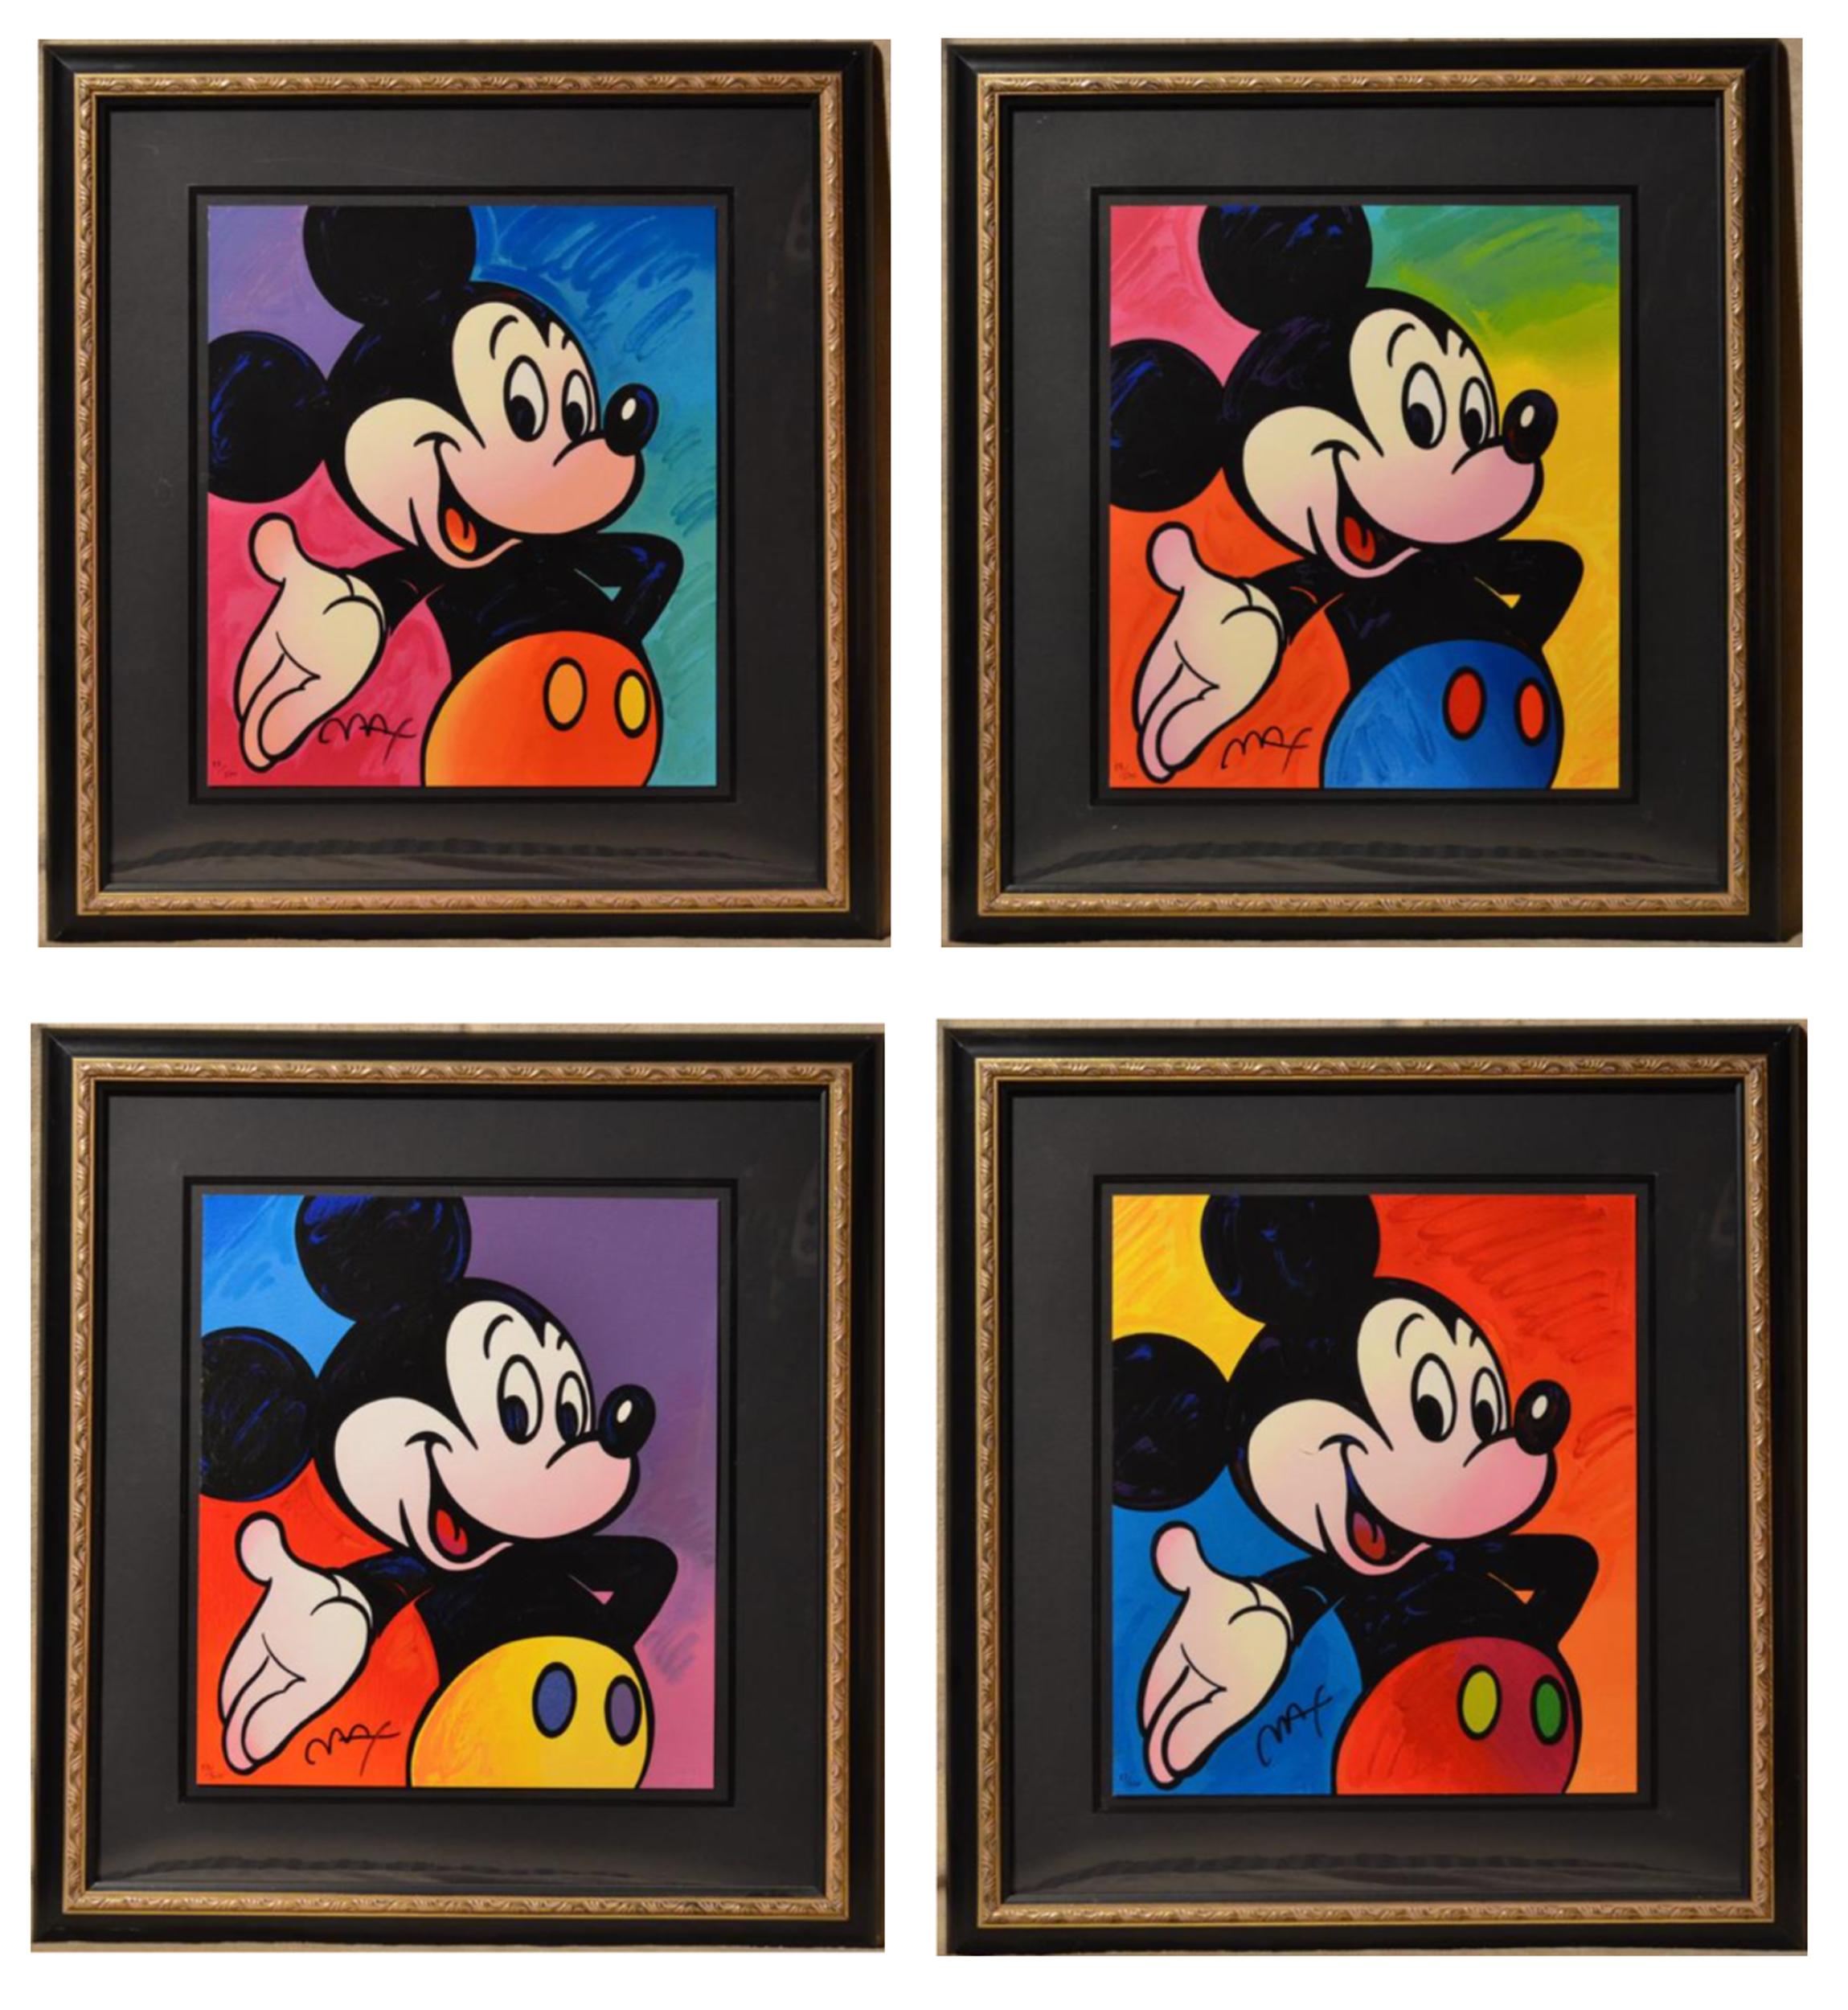 Eine Serie von vier Pop-Art-Siebdrucken der famosen Disney-Figur Mickey Mouse des psychedelischen Künstlers Peter Max. Jedes Stück ist hübsch gerahmt und vom Künstler signiert.

Micky Maus
Peter Max, deutsch/amerikanisch (1937)
Datum: 1995
Vier